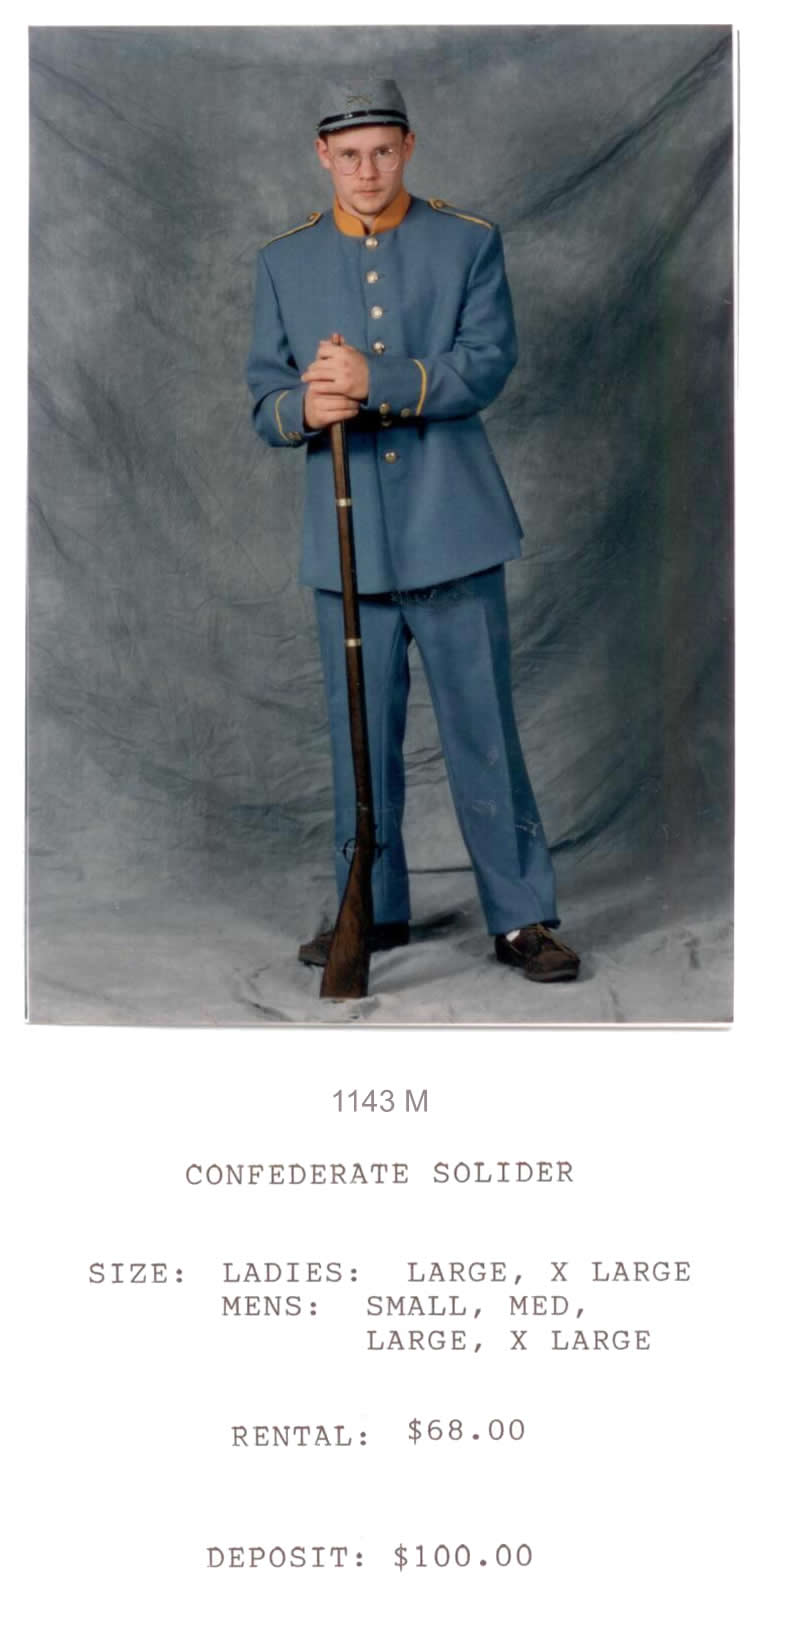 CONFEDERATE SOLDIER